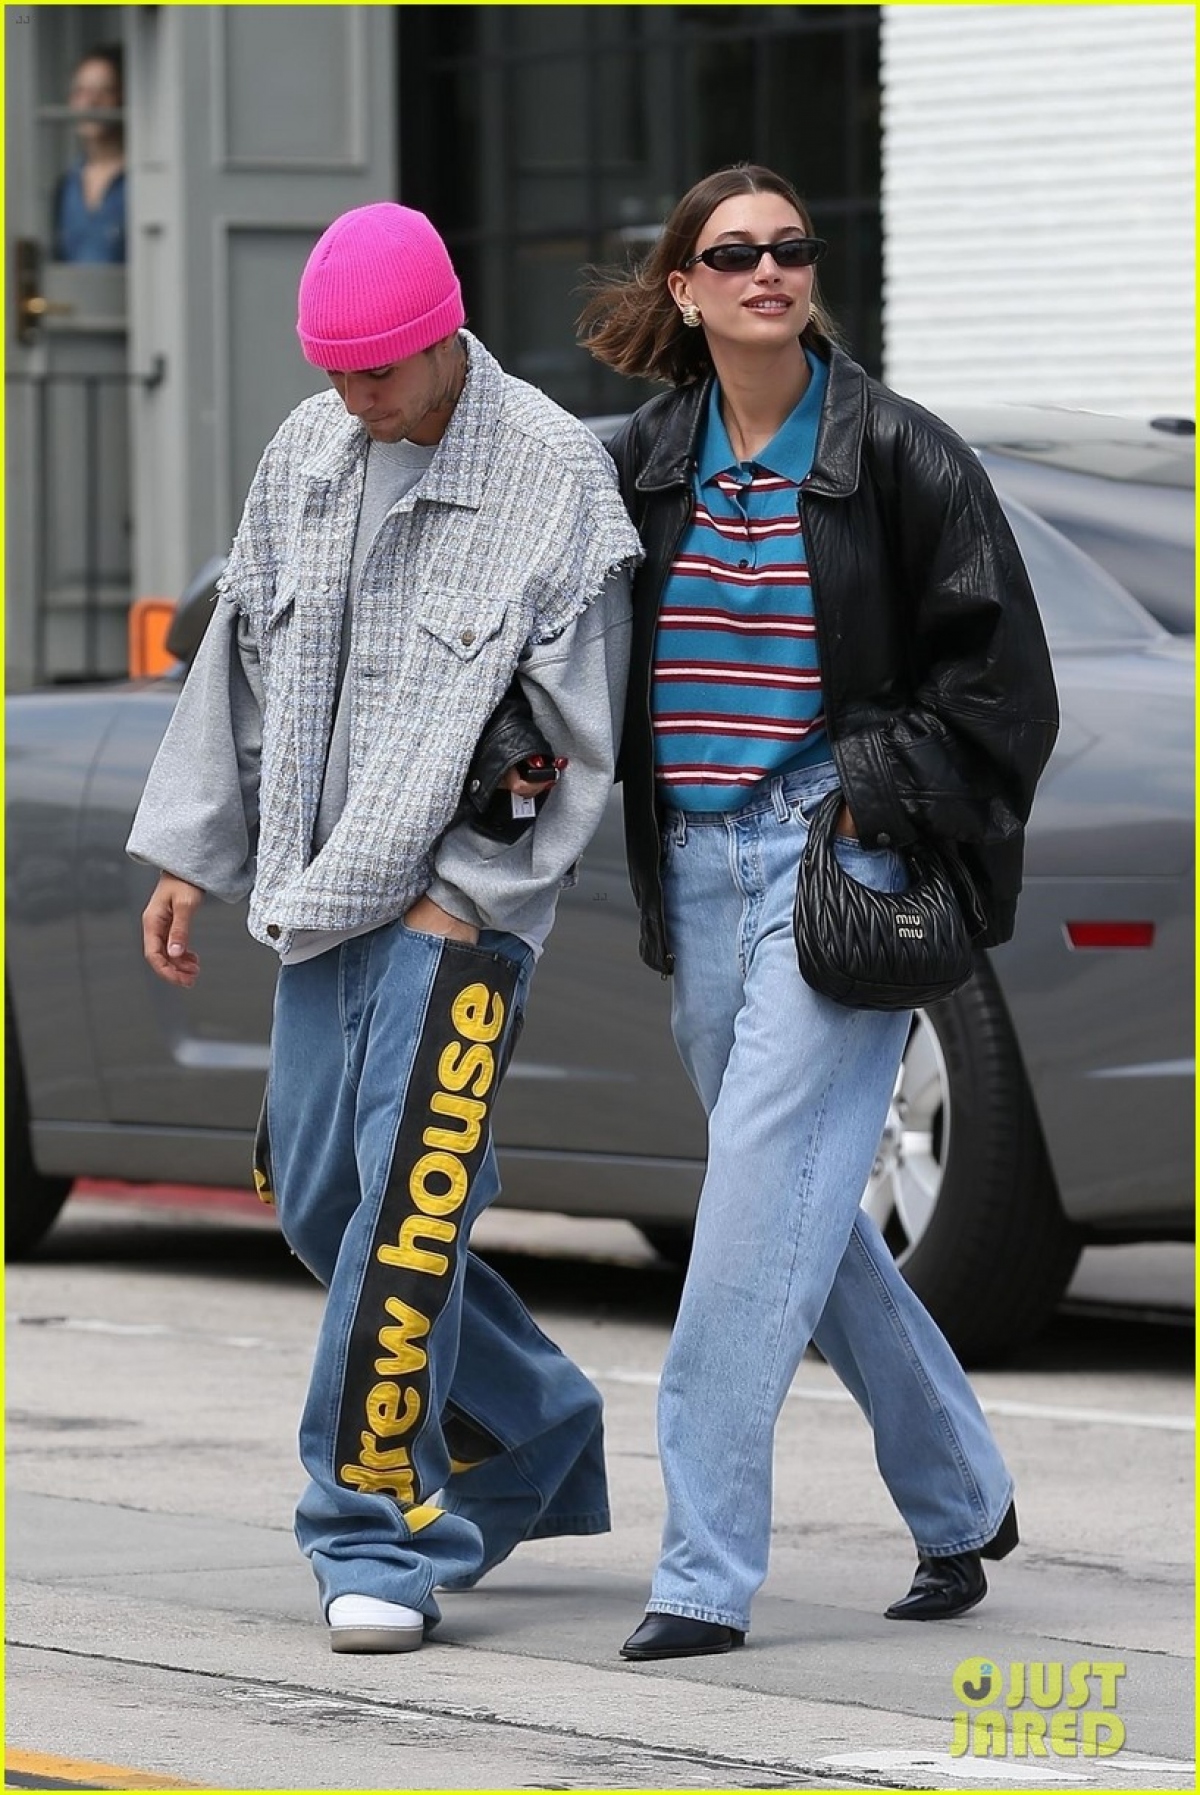 Vợ Justin Bieber sành điệu đi dạo phố cùng chồng sau tin đồn bắt nạt Selena Gomez - Ảnh 7.